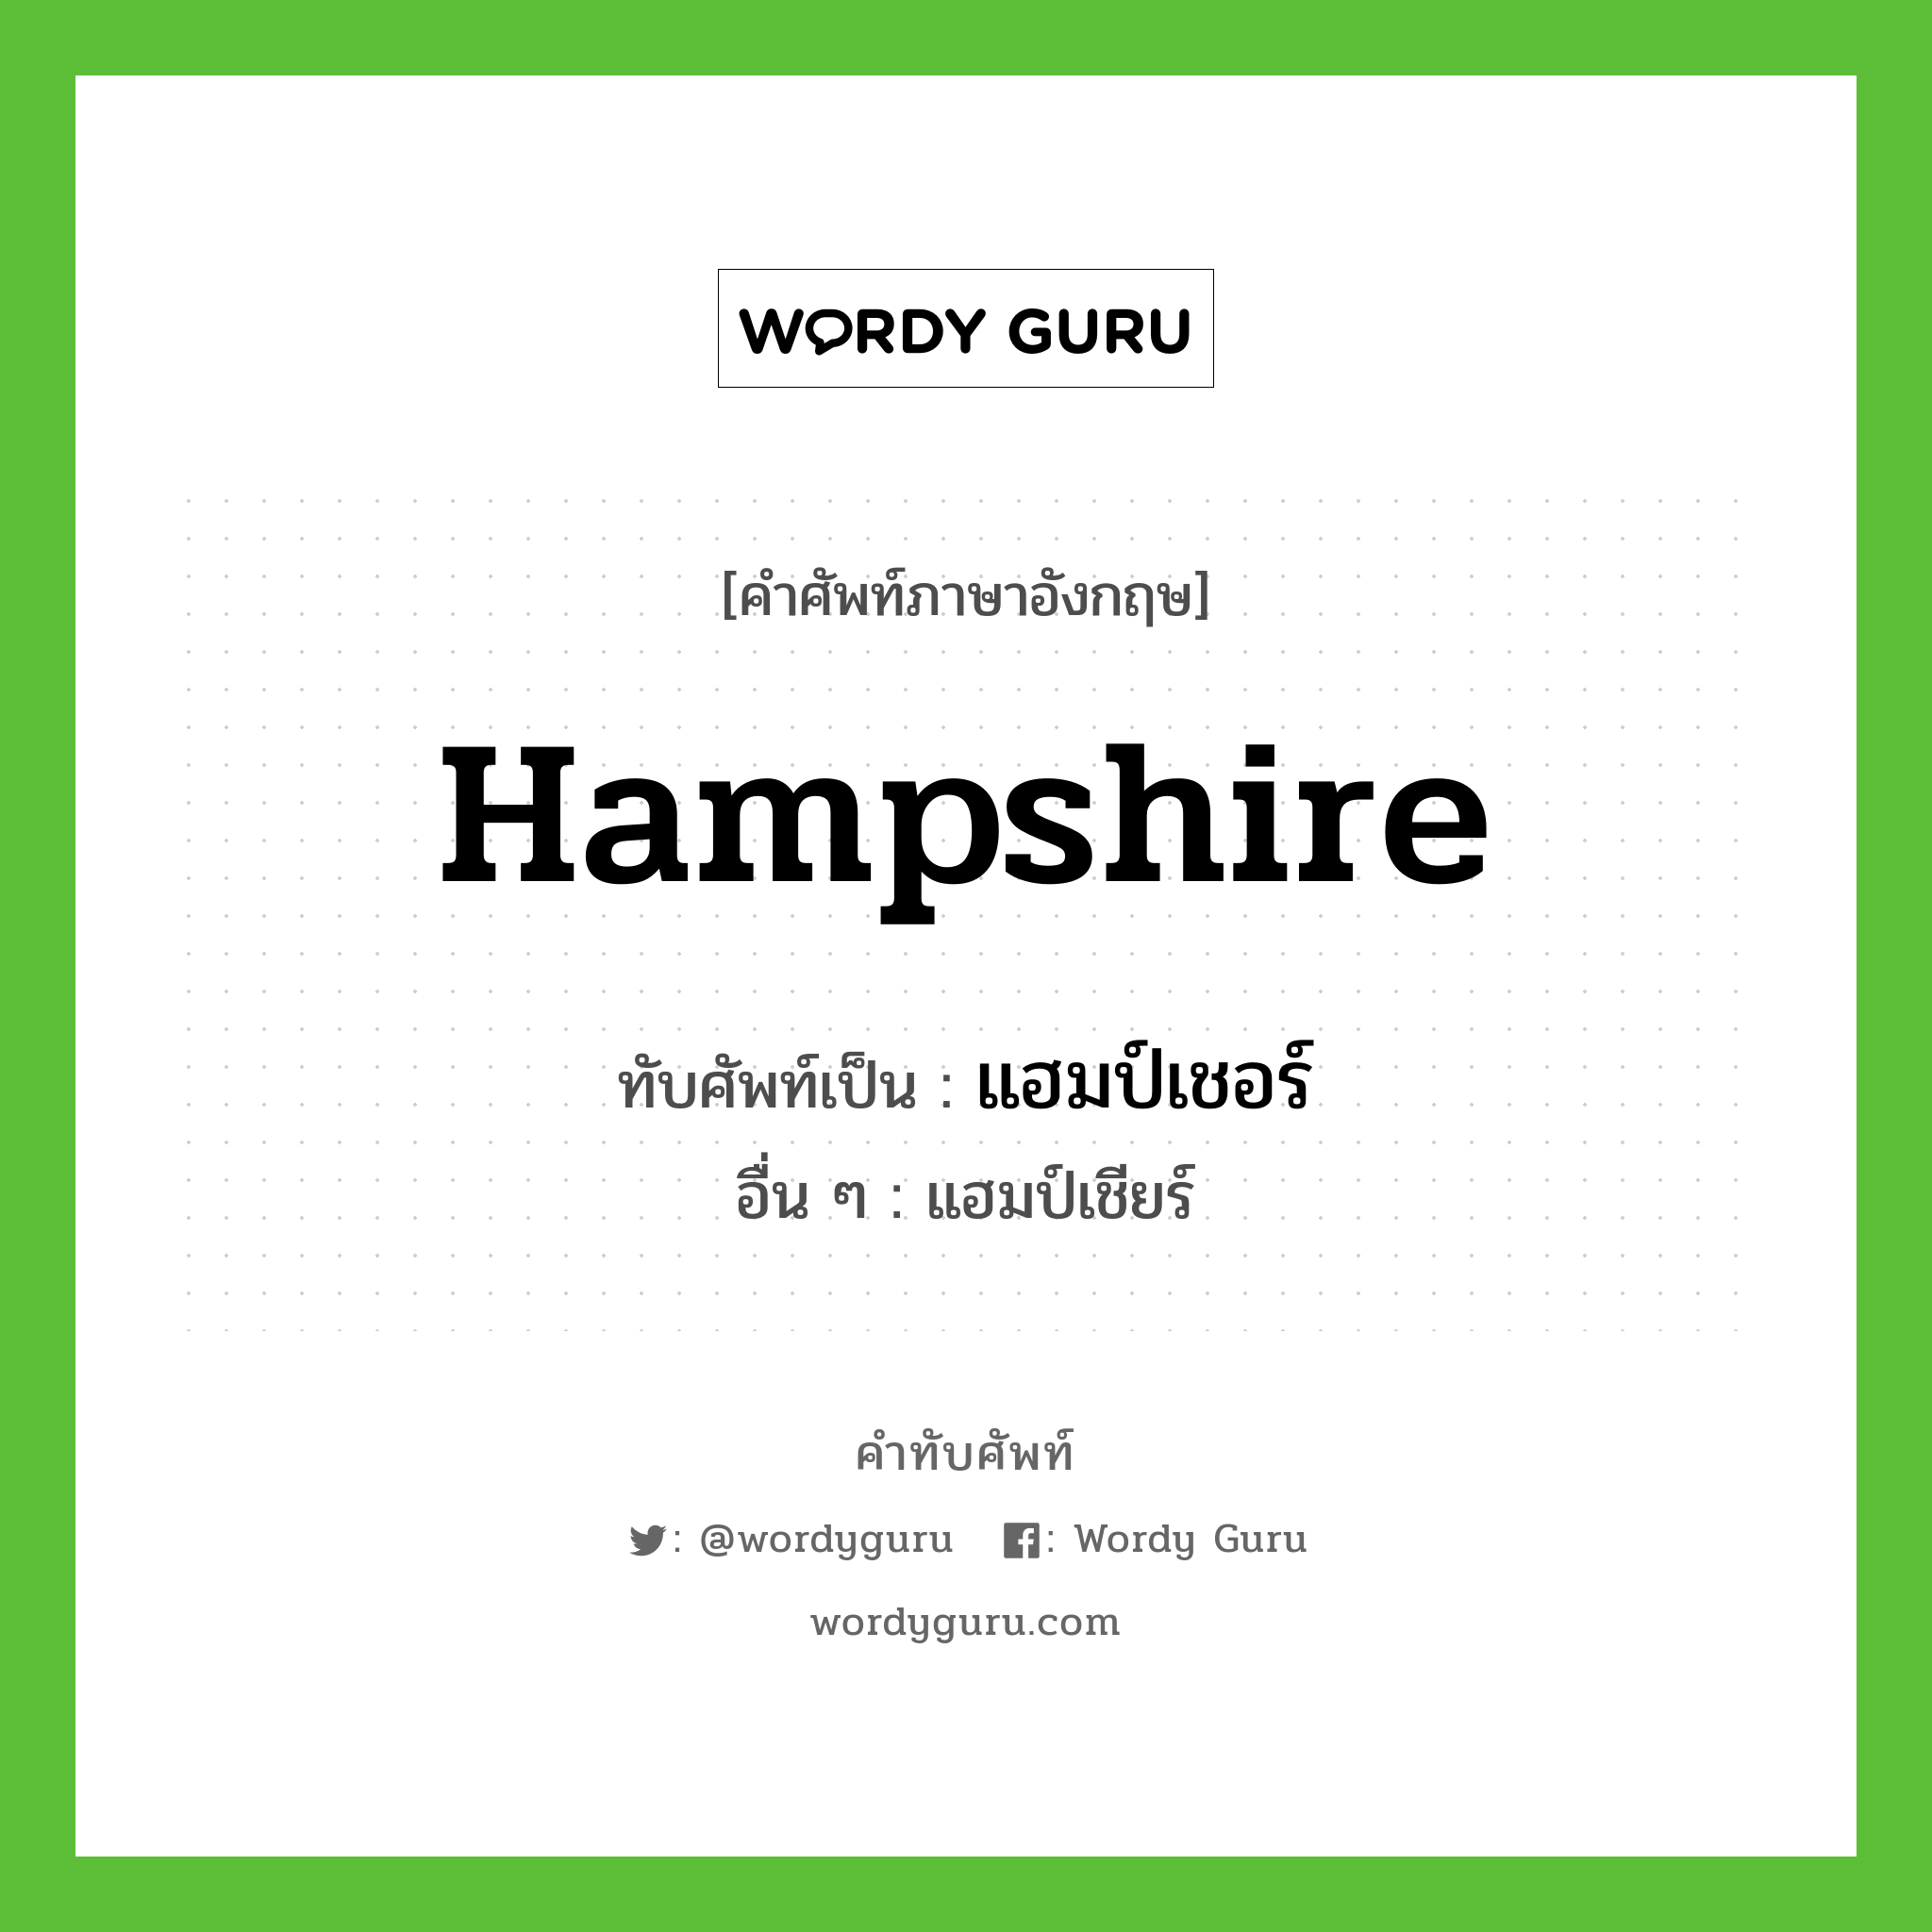 Hampshire เขียนเป็นคำไทยว่าอะไร?, คำศัพท์ภาษาอังกฤษ Hampshire ทับศัพท์เป็น แฮมป์เชอร์ อื่น ๆ แฮมป์เชียร์